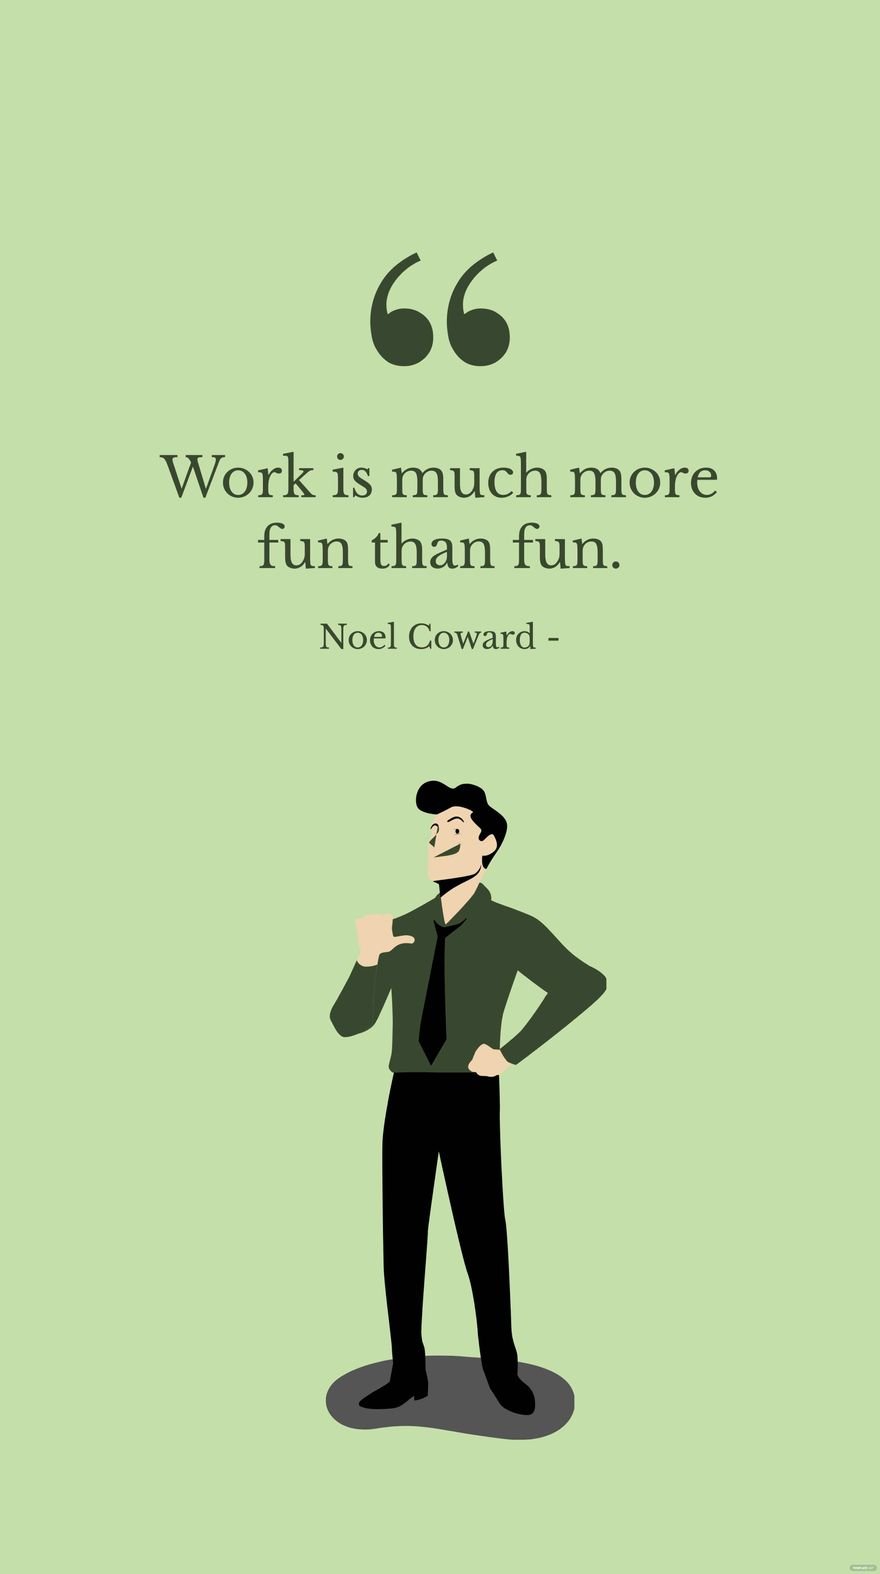 Free Noel Coward - Work is much more fun than fun. in JPG